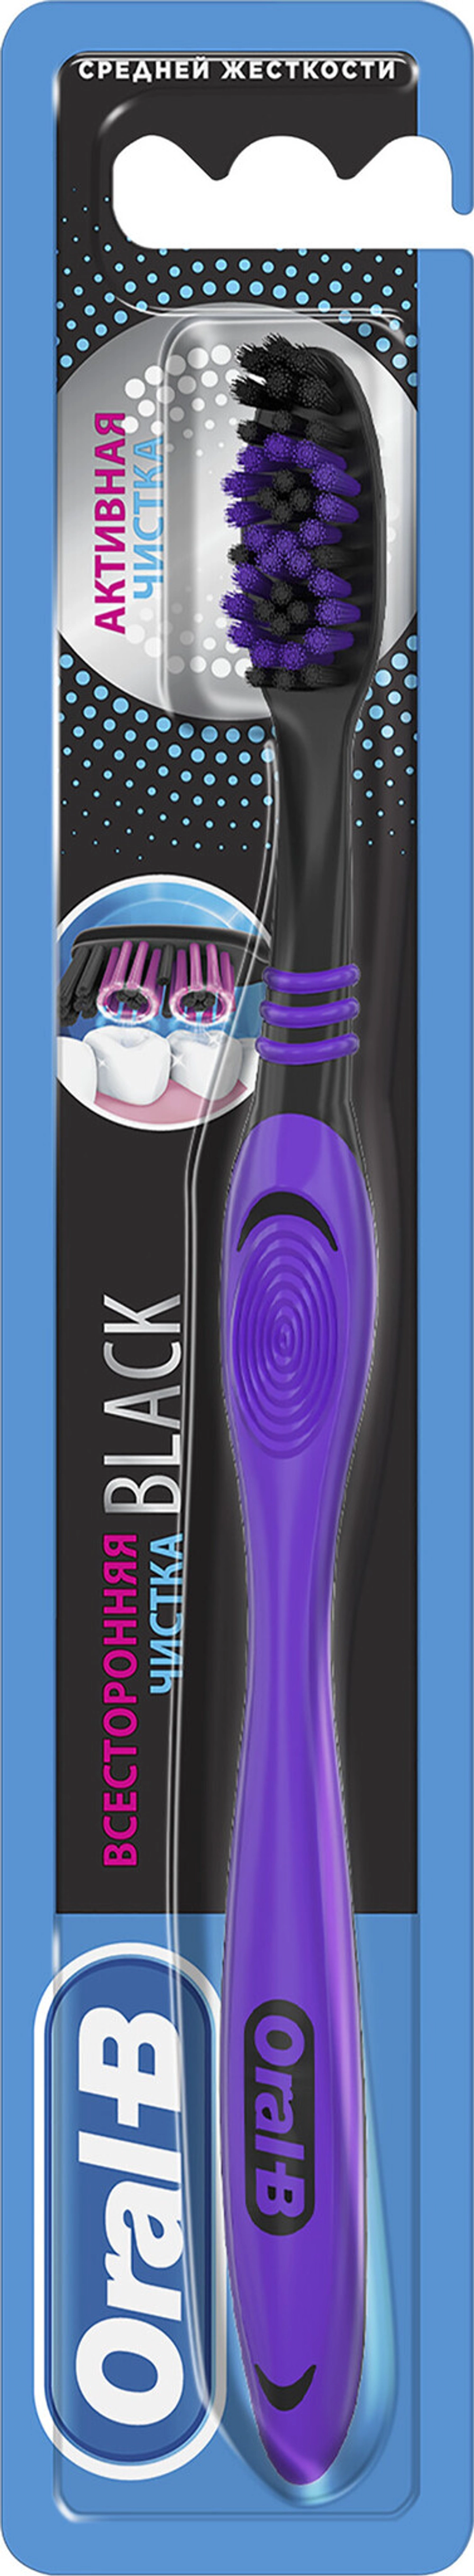 Зубная щетка Oral-B Black Всесторонняя чистка, средняя, черный/фиолетовый, цвет черный/фиолетовый